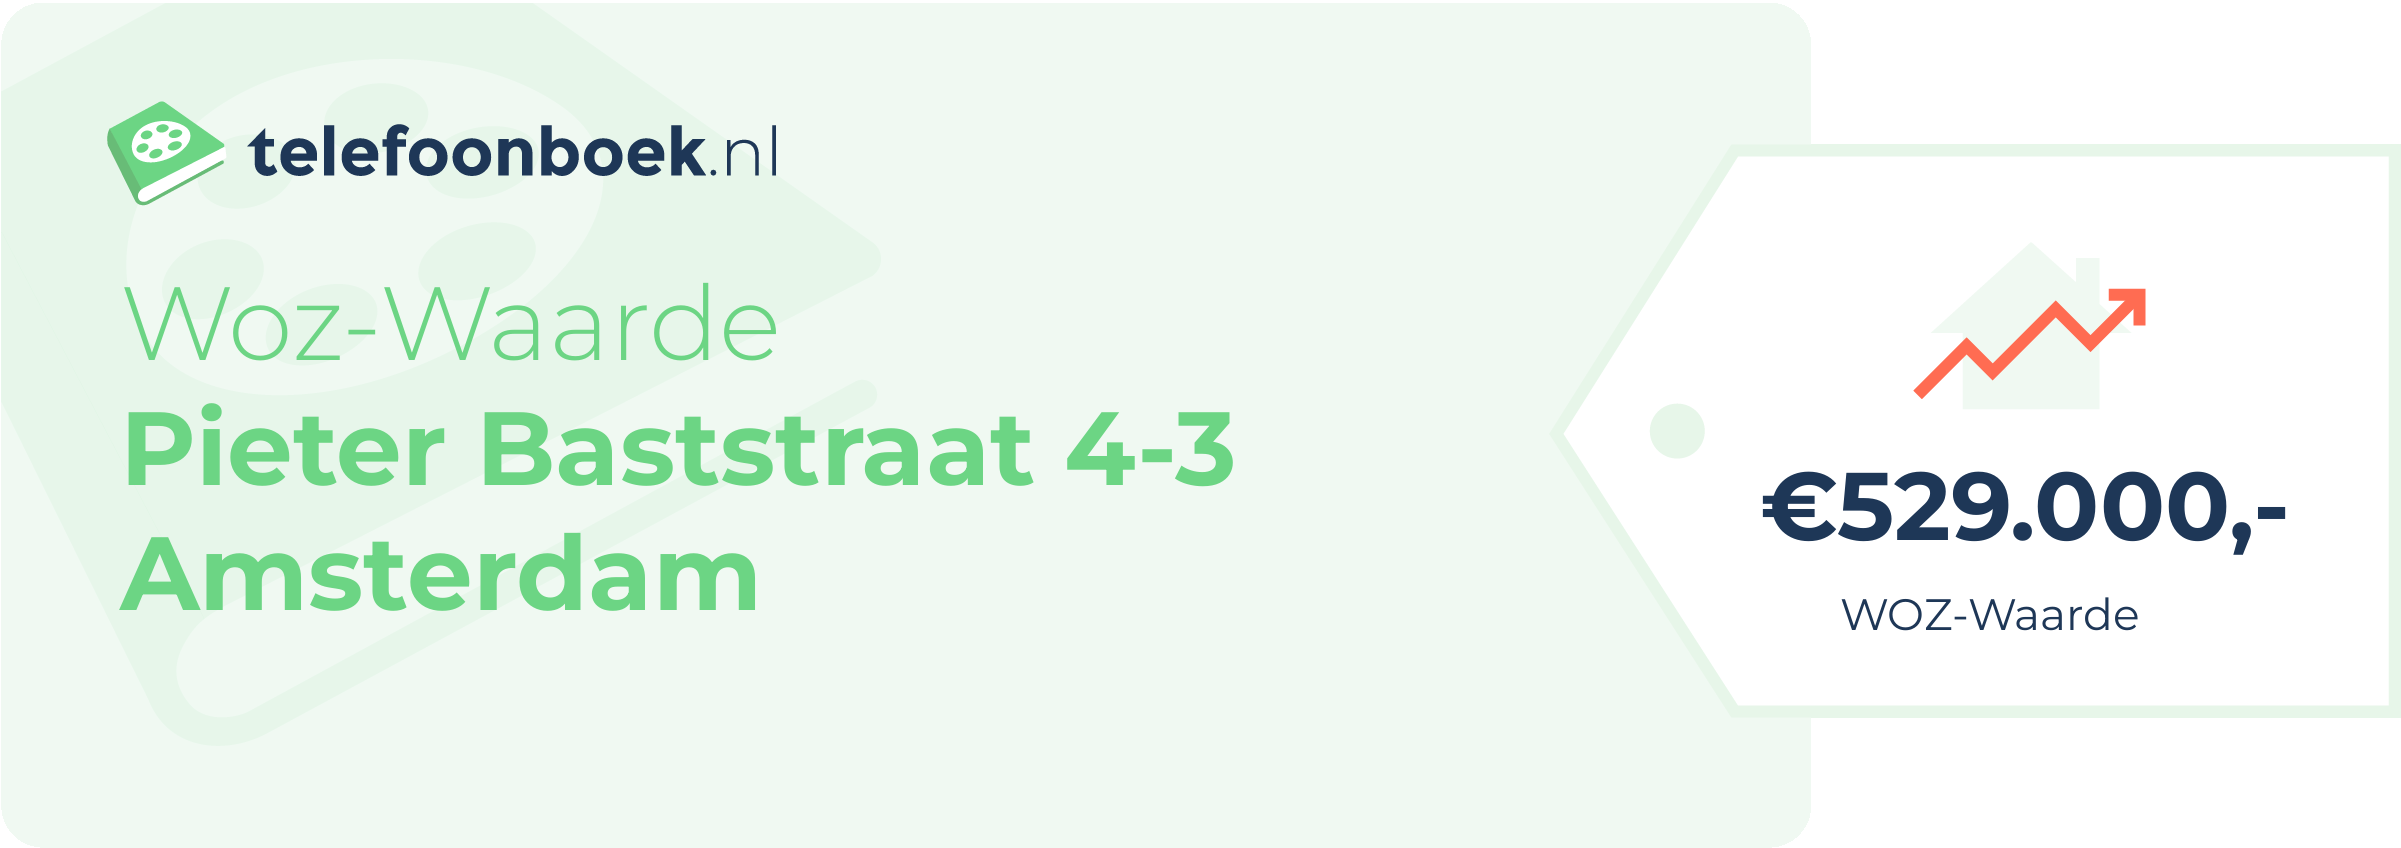 WOZ-waarde Pieter Baststraat 4-3 Amsterdam